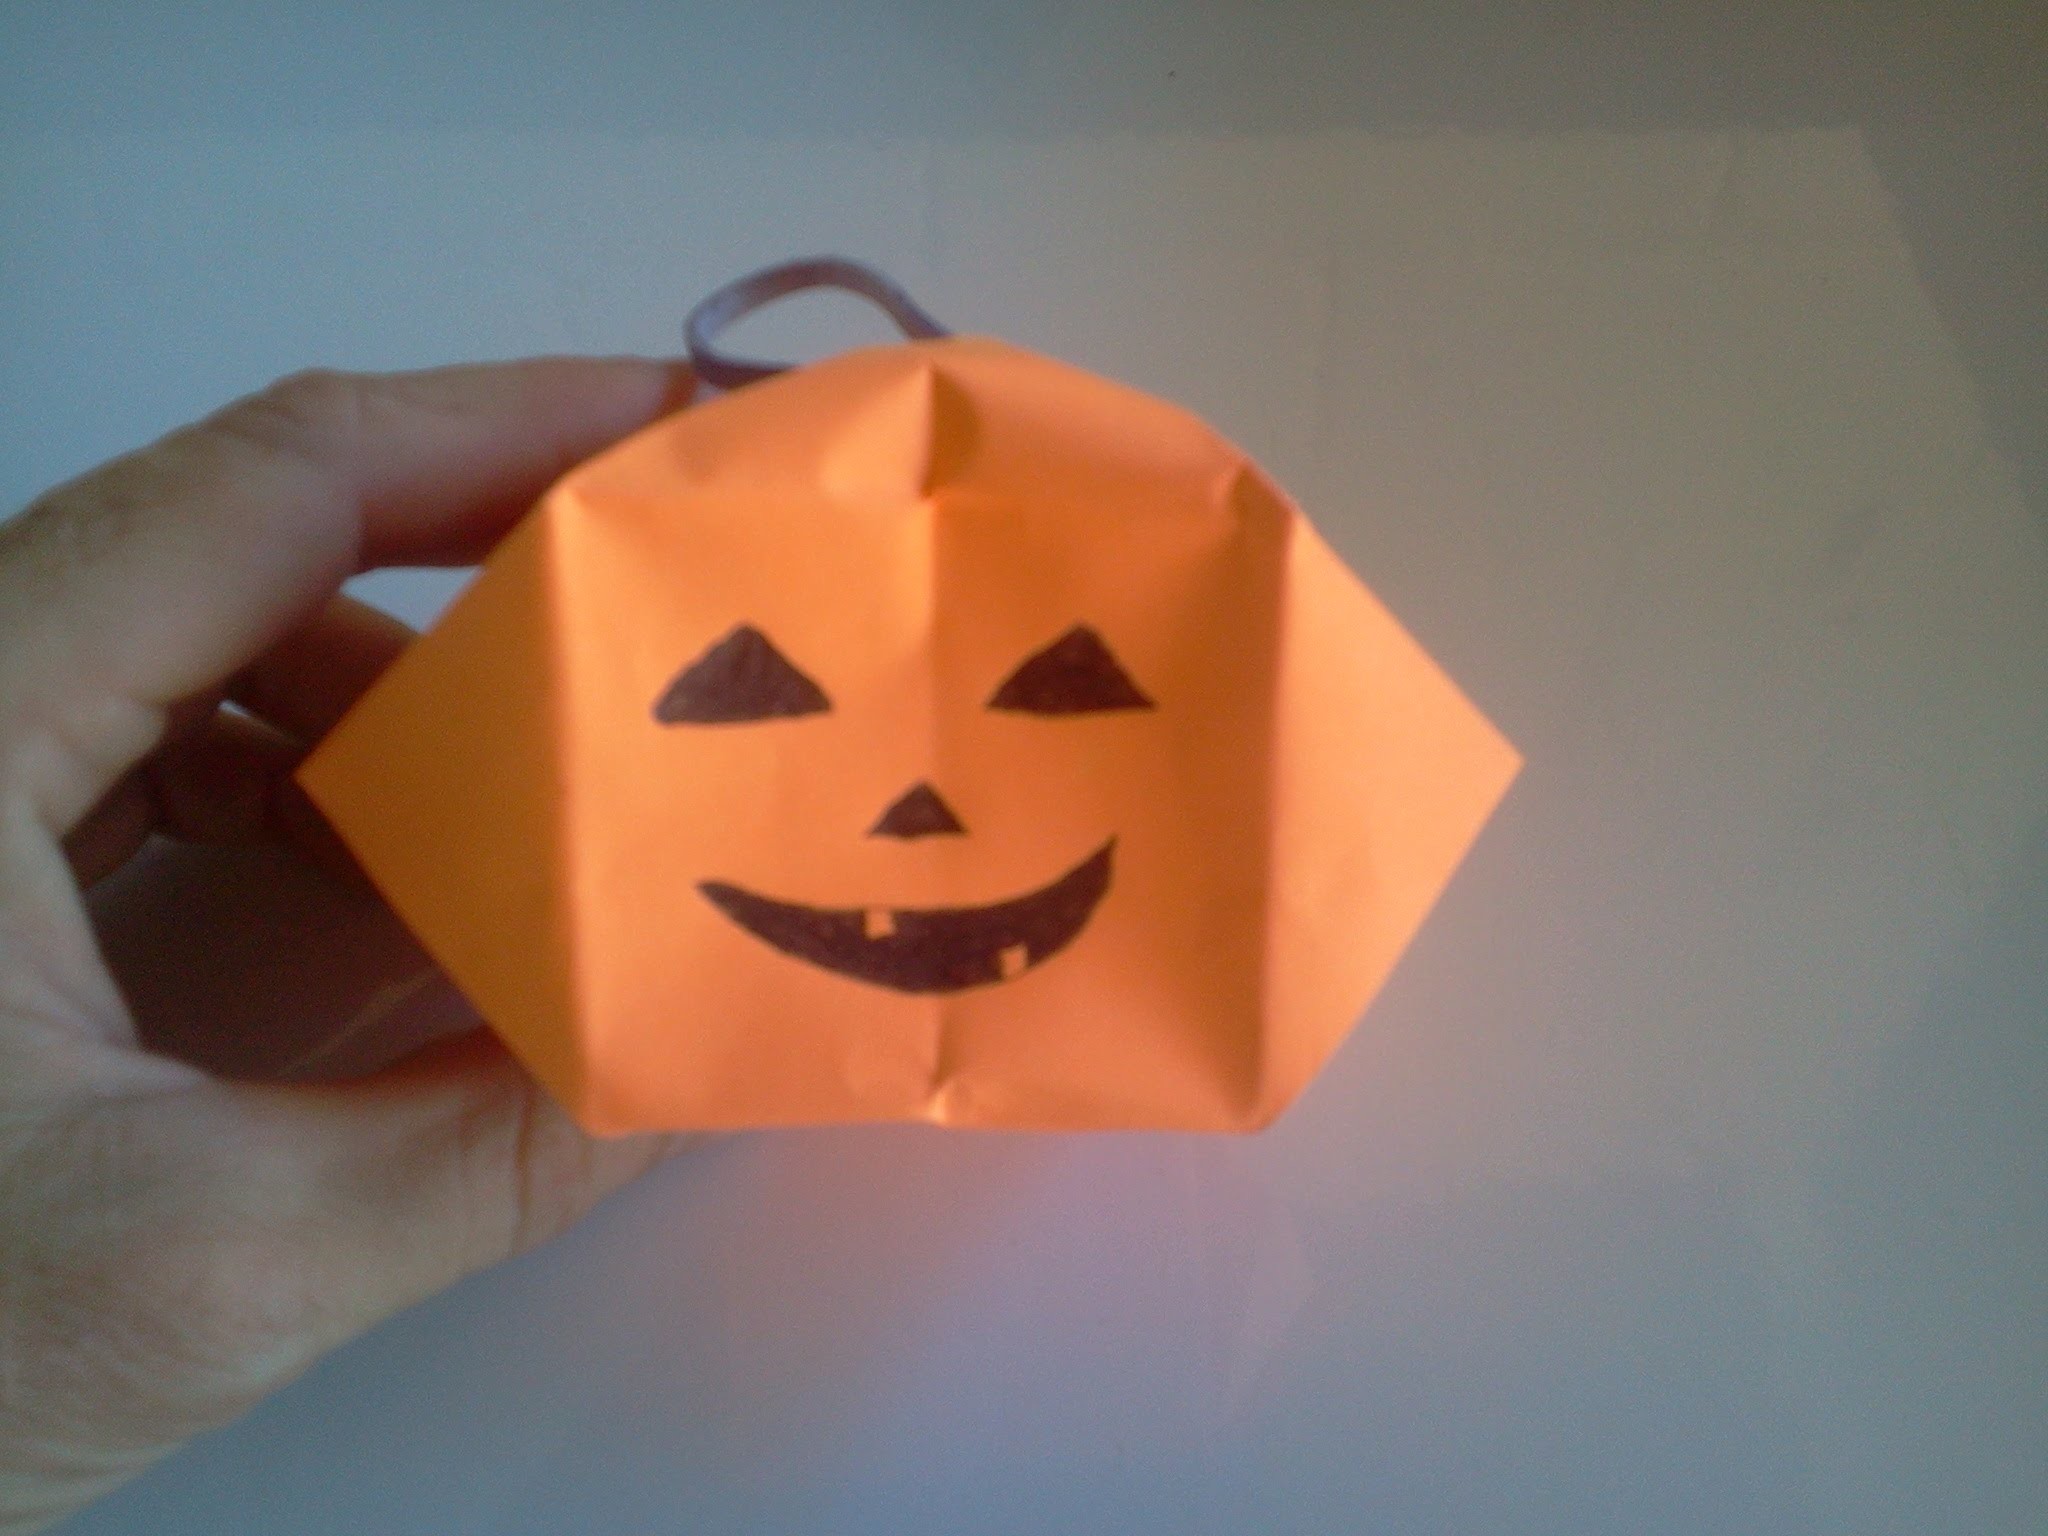 Halloween crafts. Pumpkin 3D - Calabaza 3D, Manualidades Dia de los muertos, Todos los santos